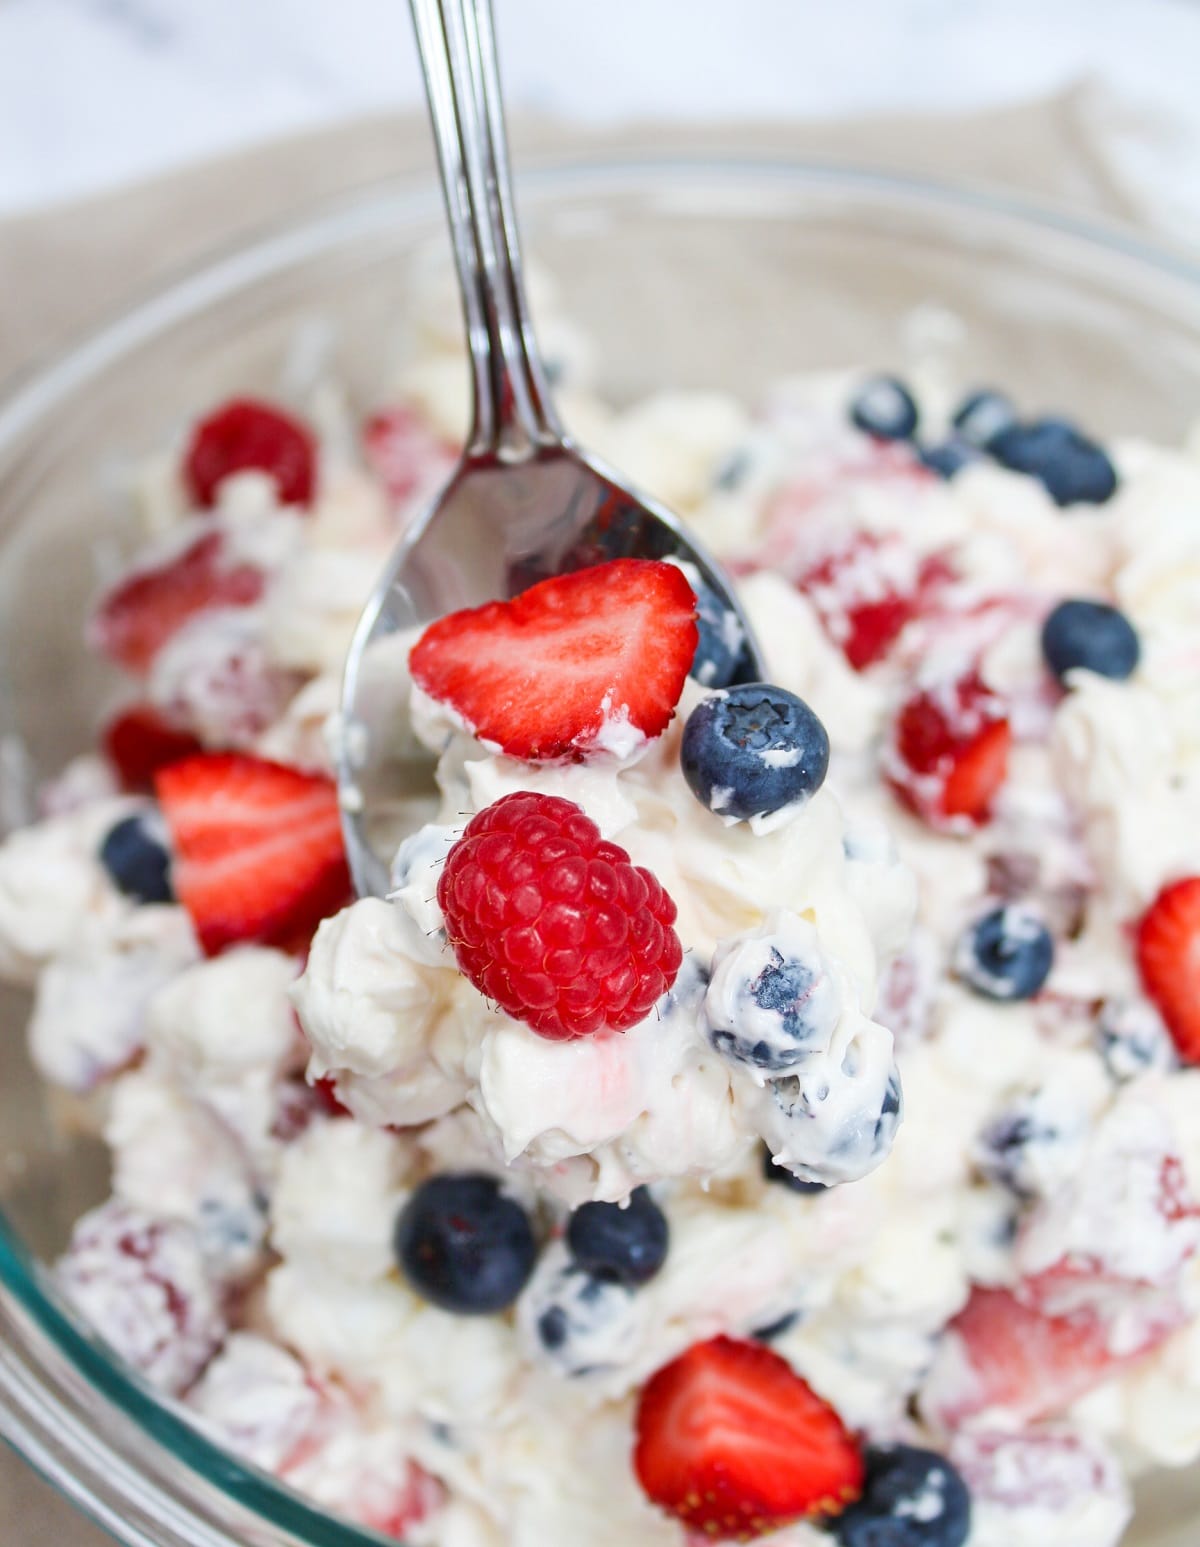 salad on spoon showing strawberries, blueberries, and raspberries